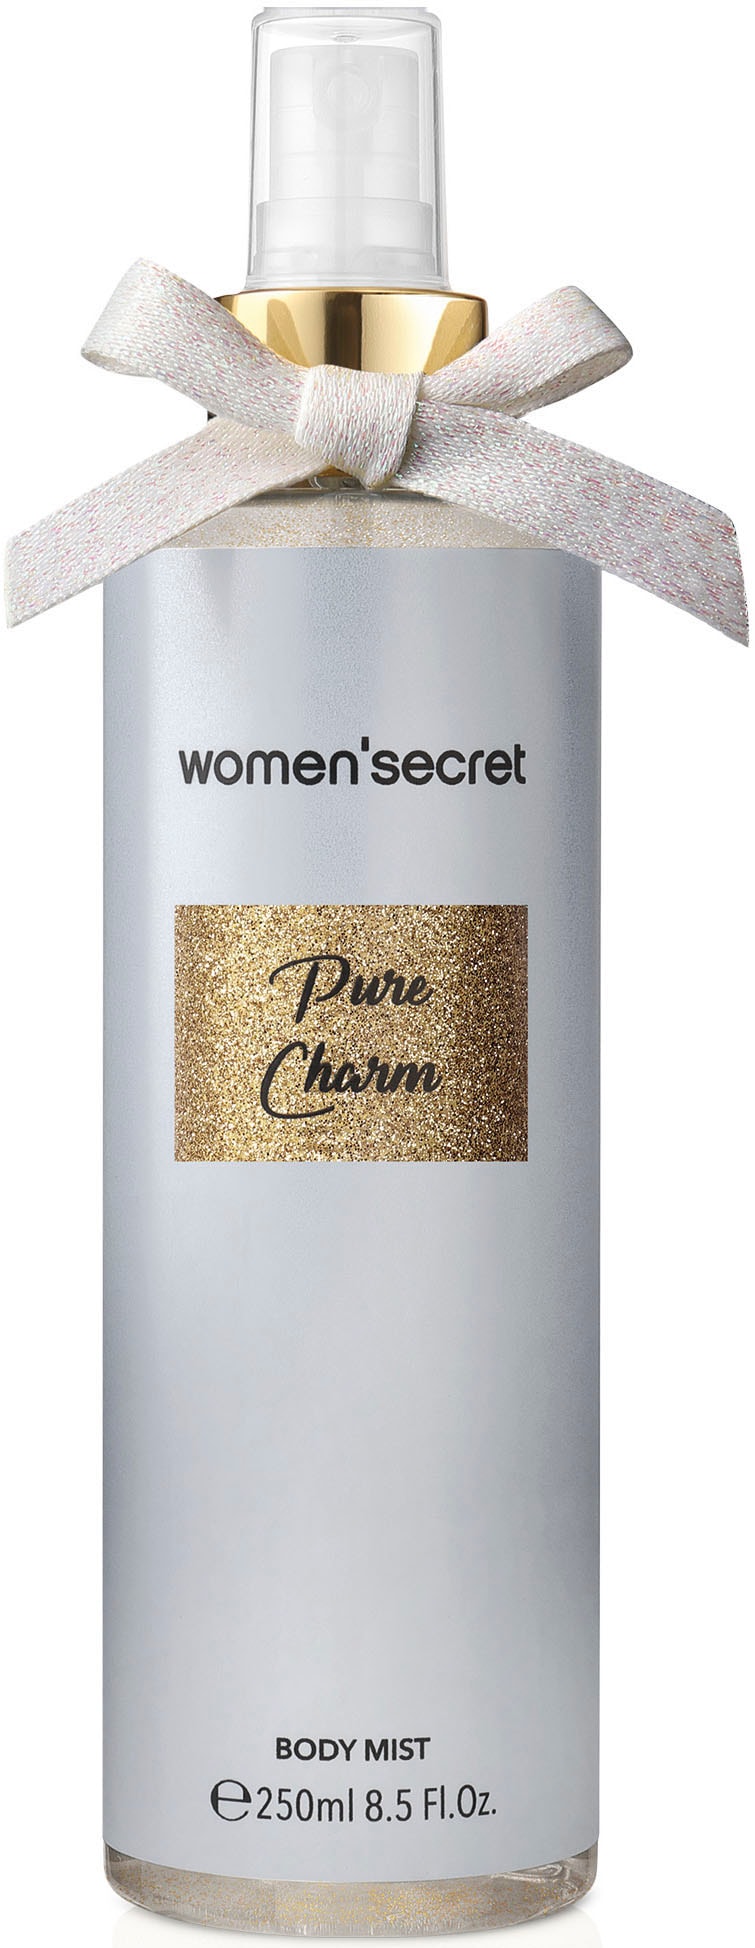 women'secret Bodyspray »Women Secret - Body Mist - Pure Charm - 250ml«